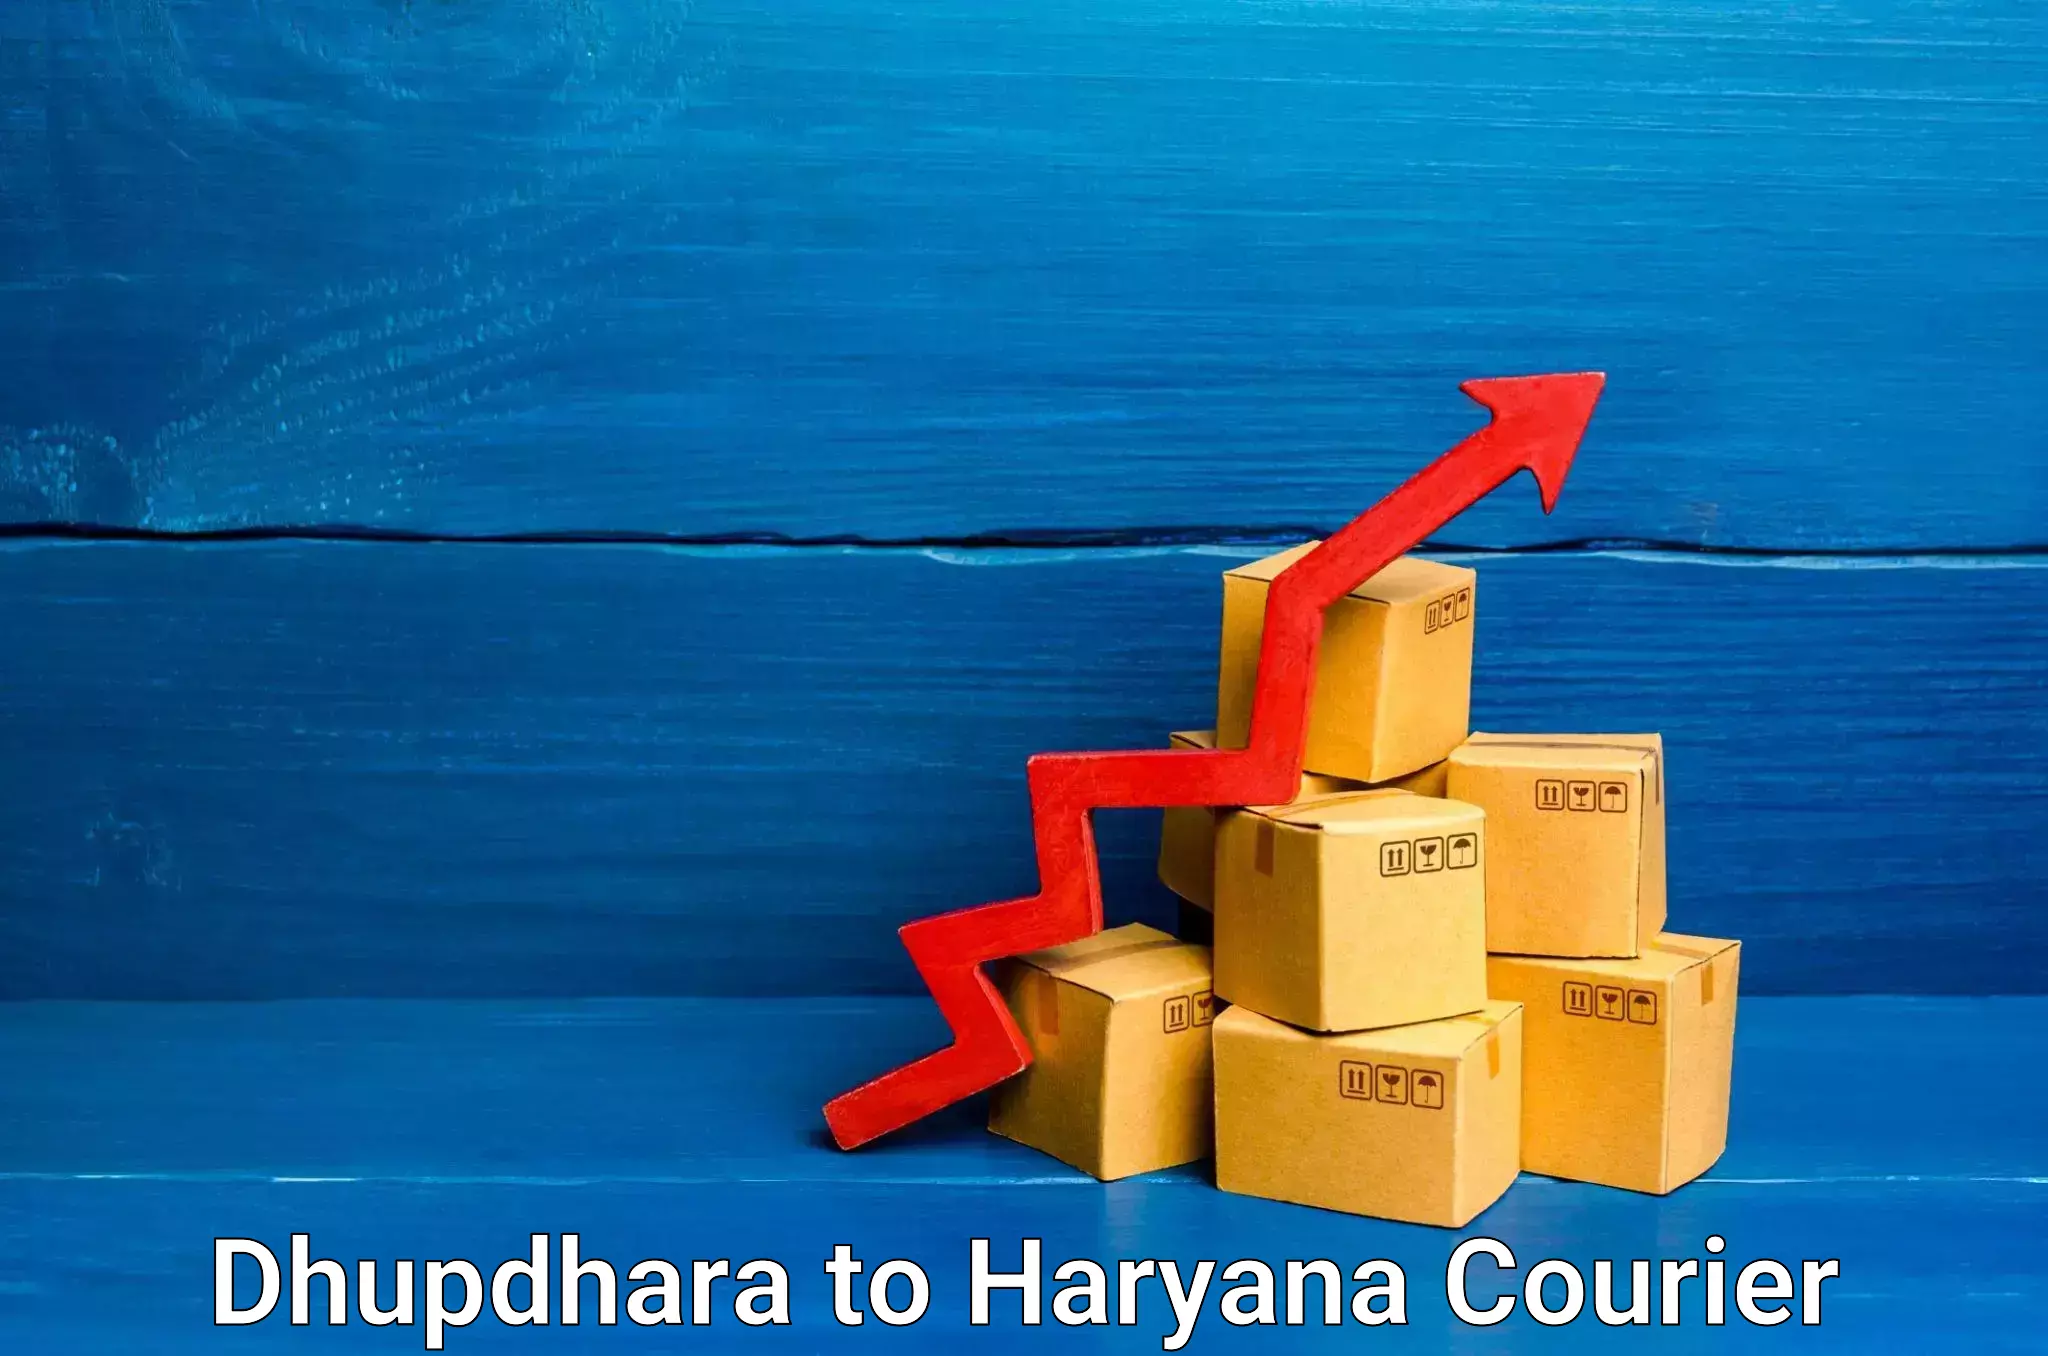 Logistics efficiency Dhupdhara to Chaudhary Charan Singh Haryana Agricultural University Hisar